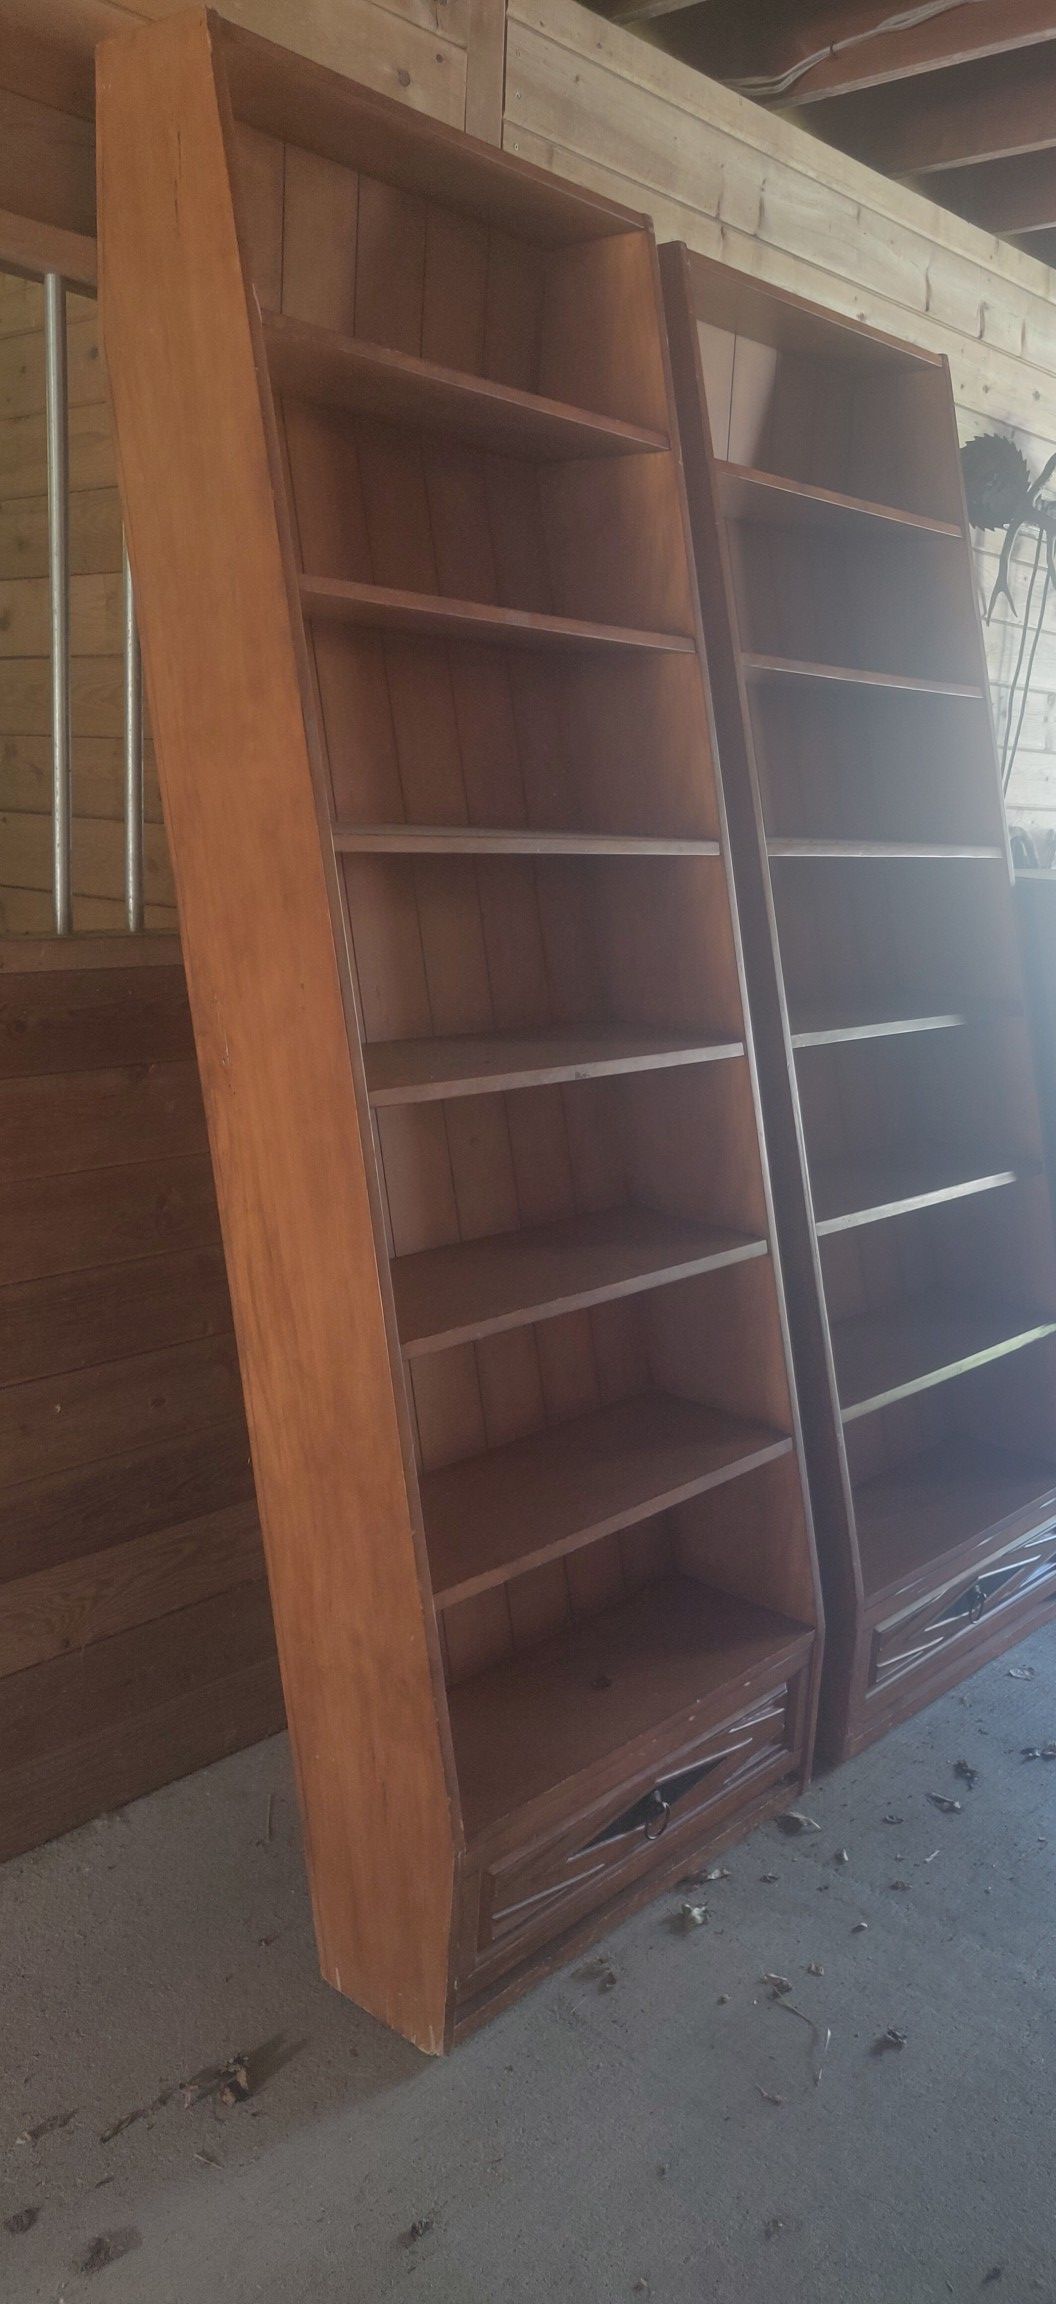 Leaning Bookshelves